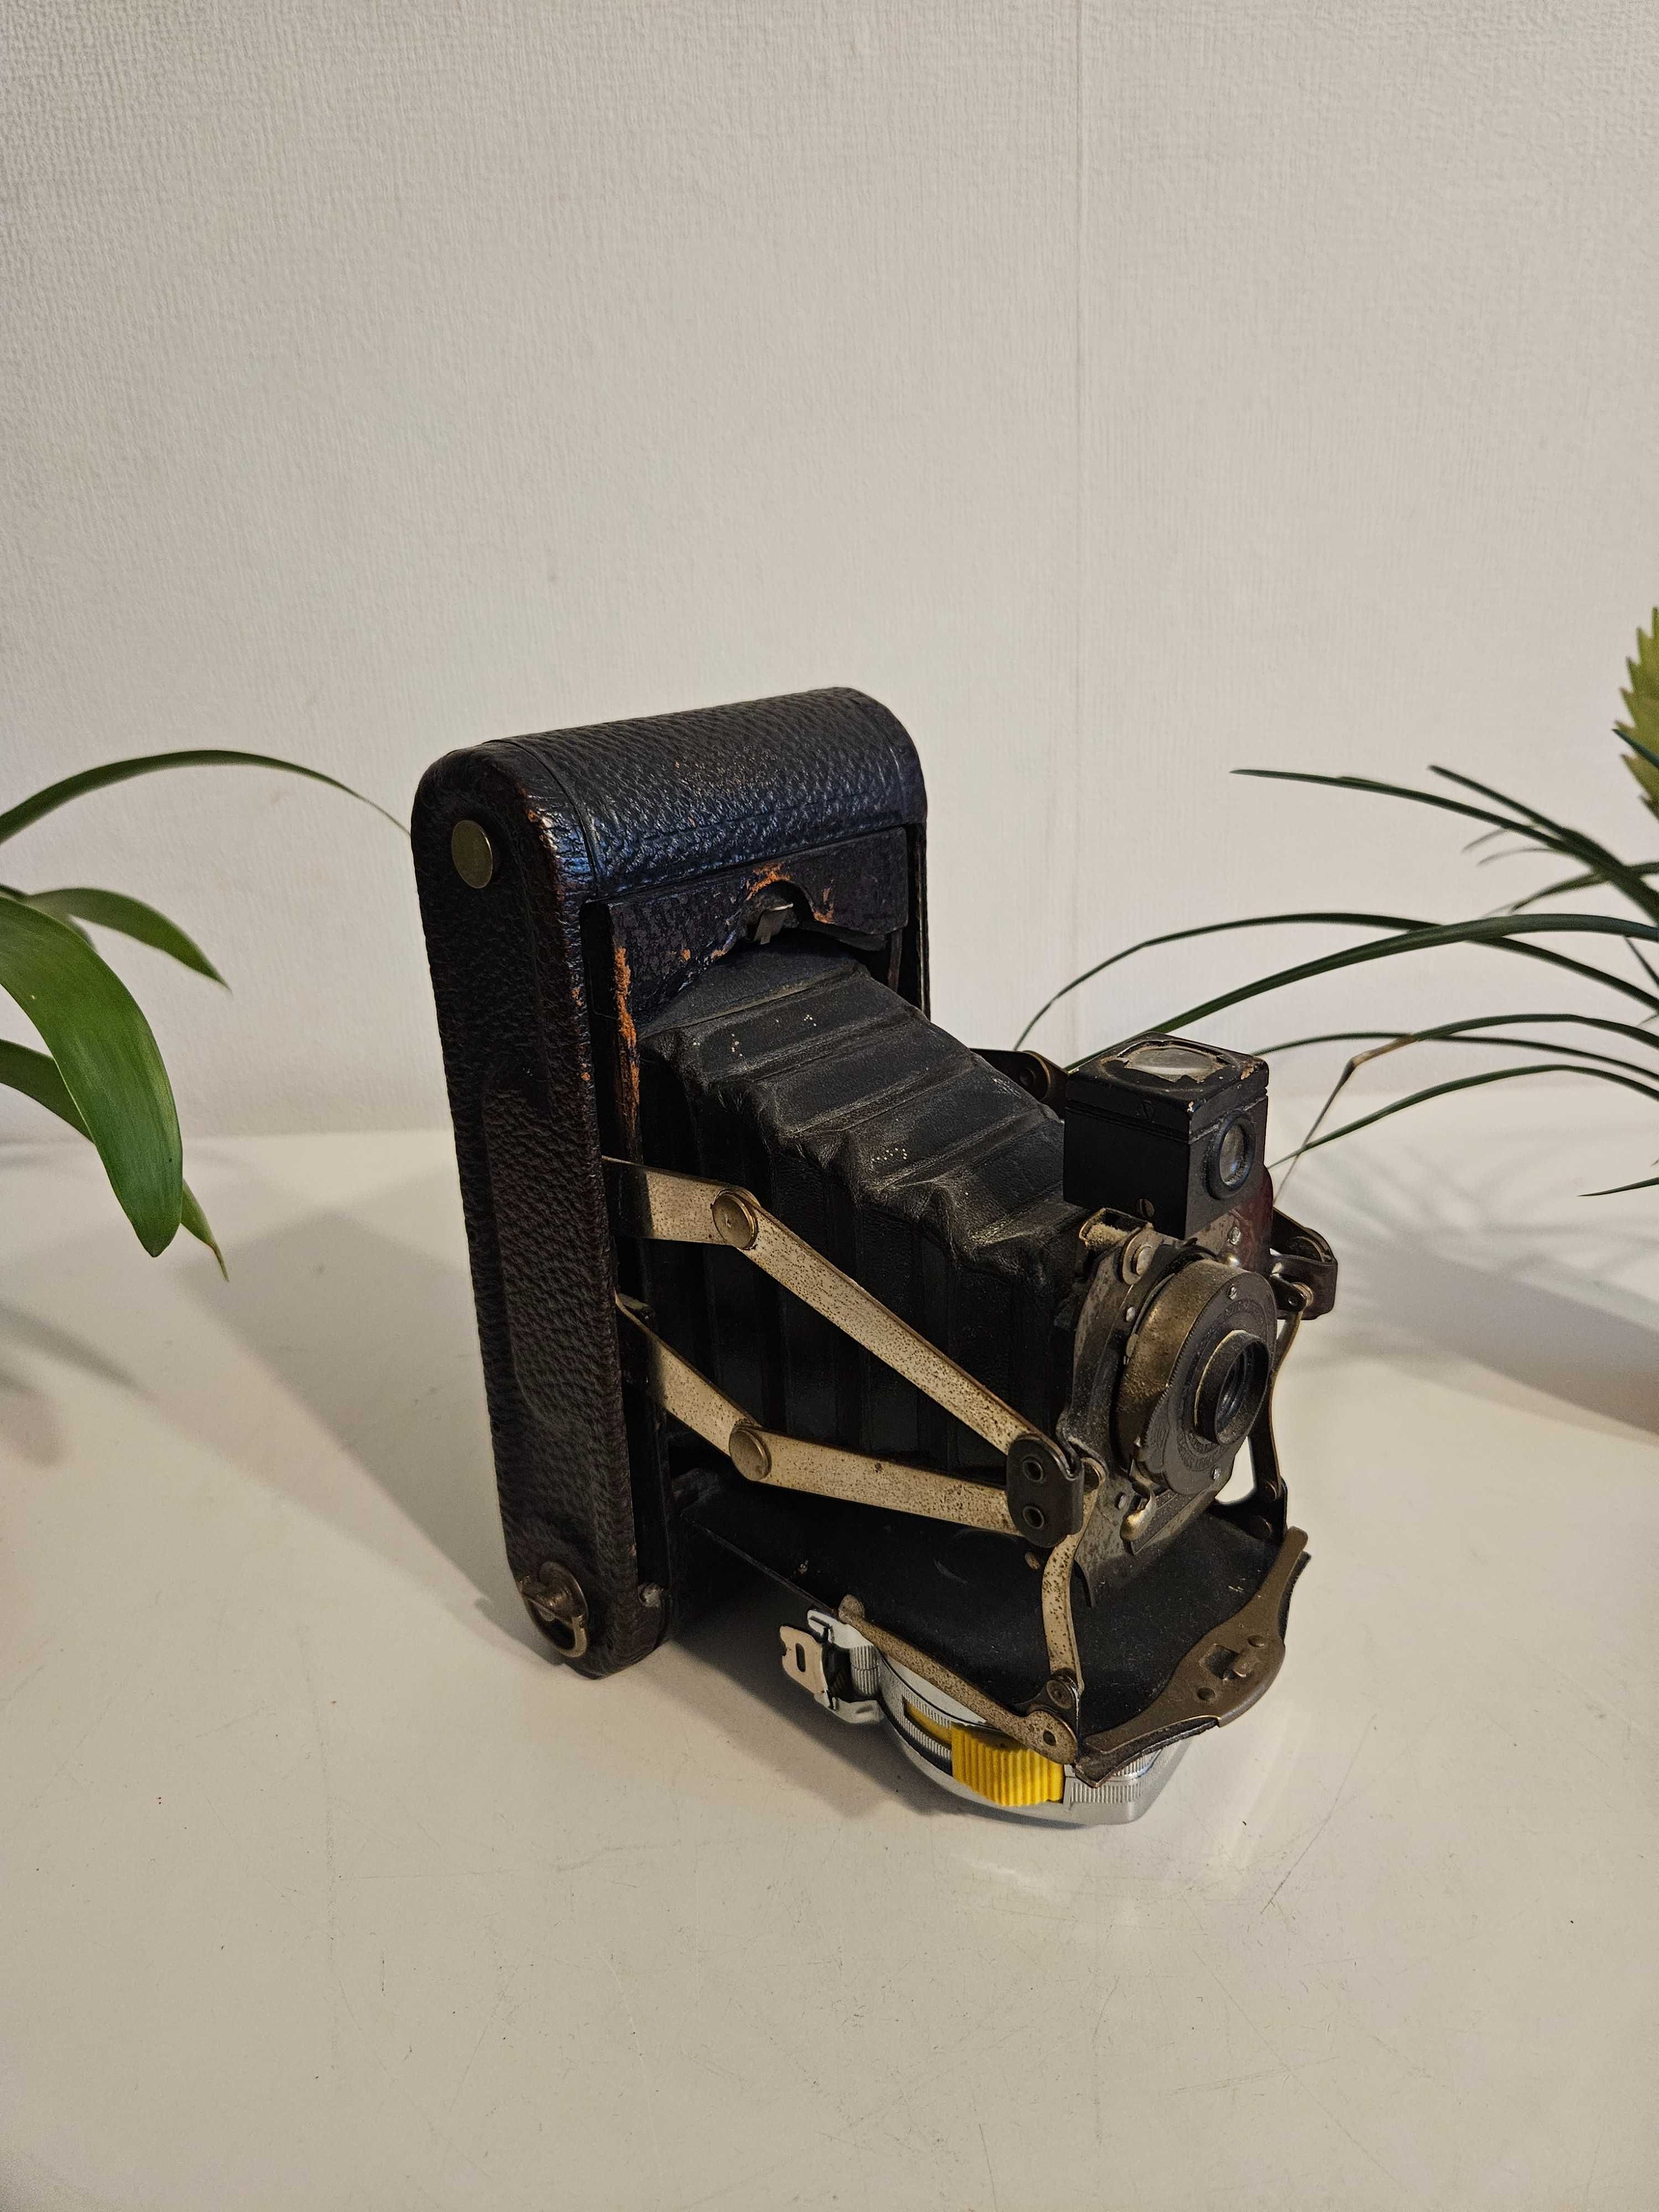 Zabytkowy aparat fotograficzny Kodak POCKET AUTOMATIC z 1909r